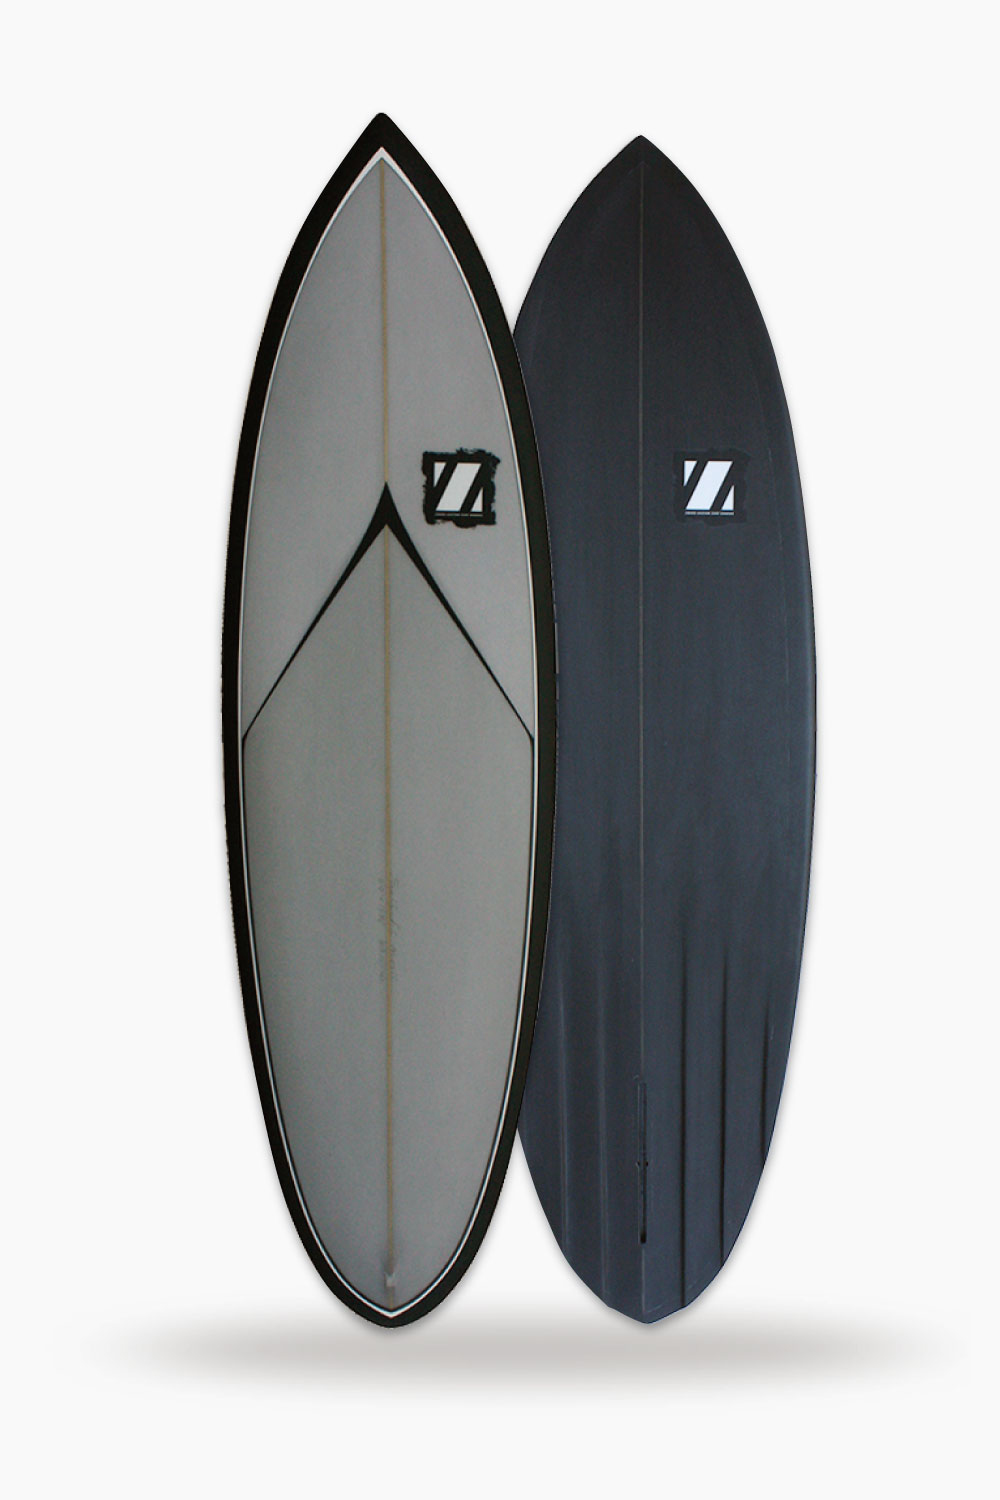 ROCKET SHIP – ZBURH CUSTOM SURFBOARDS